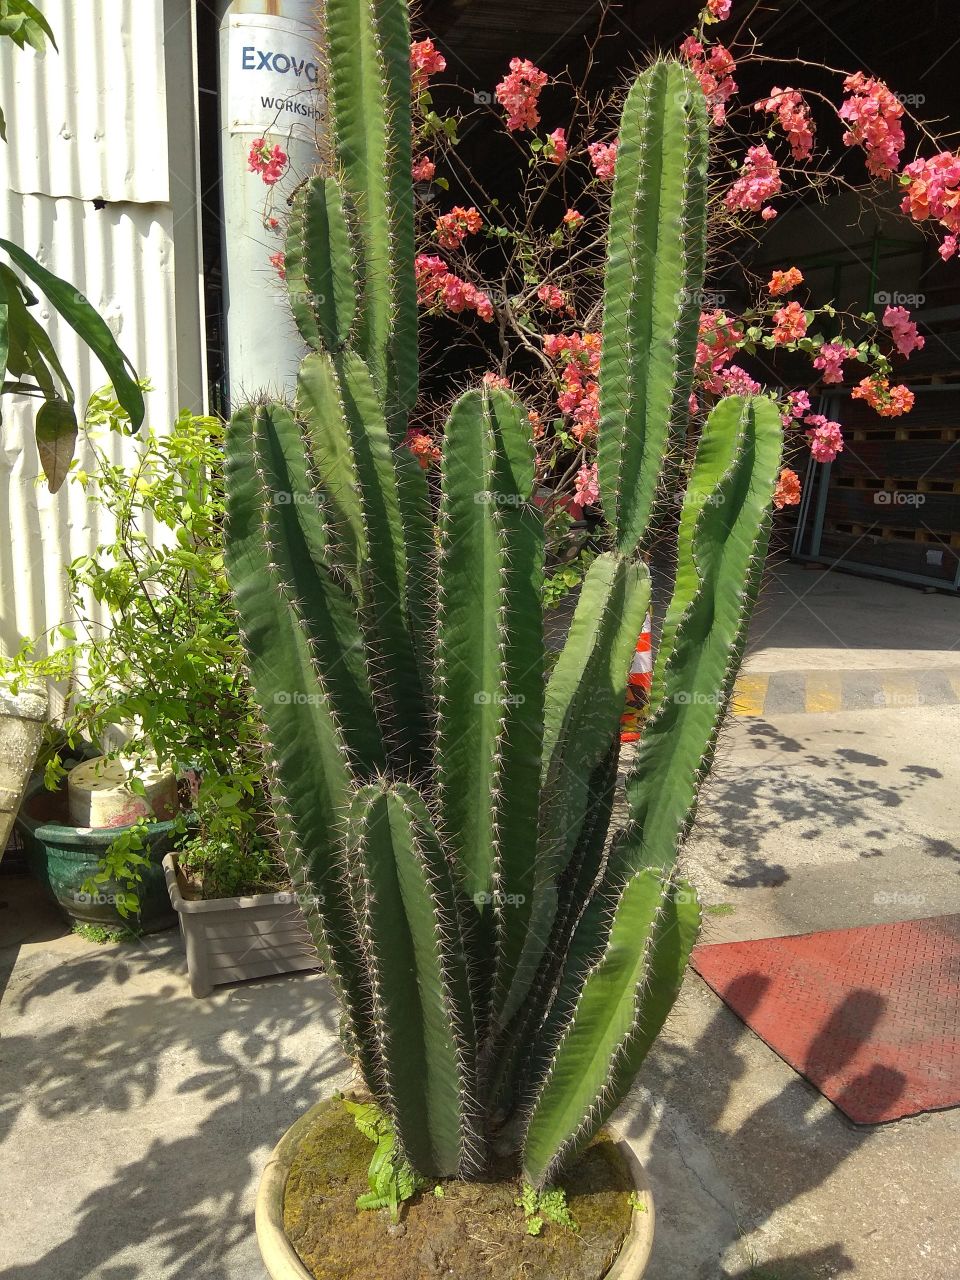 Aloe Vera family plant